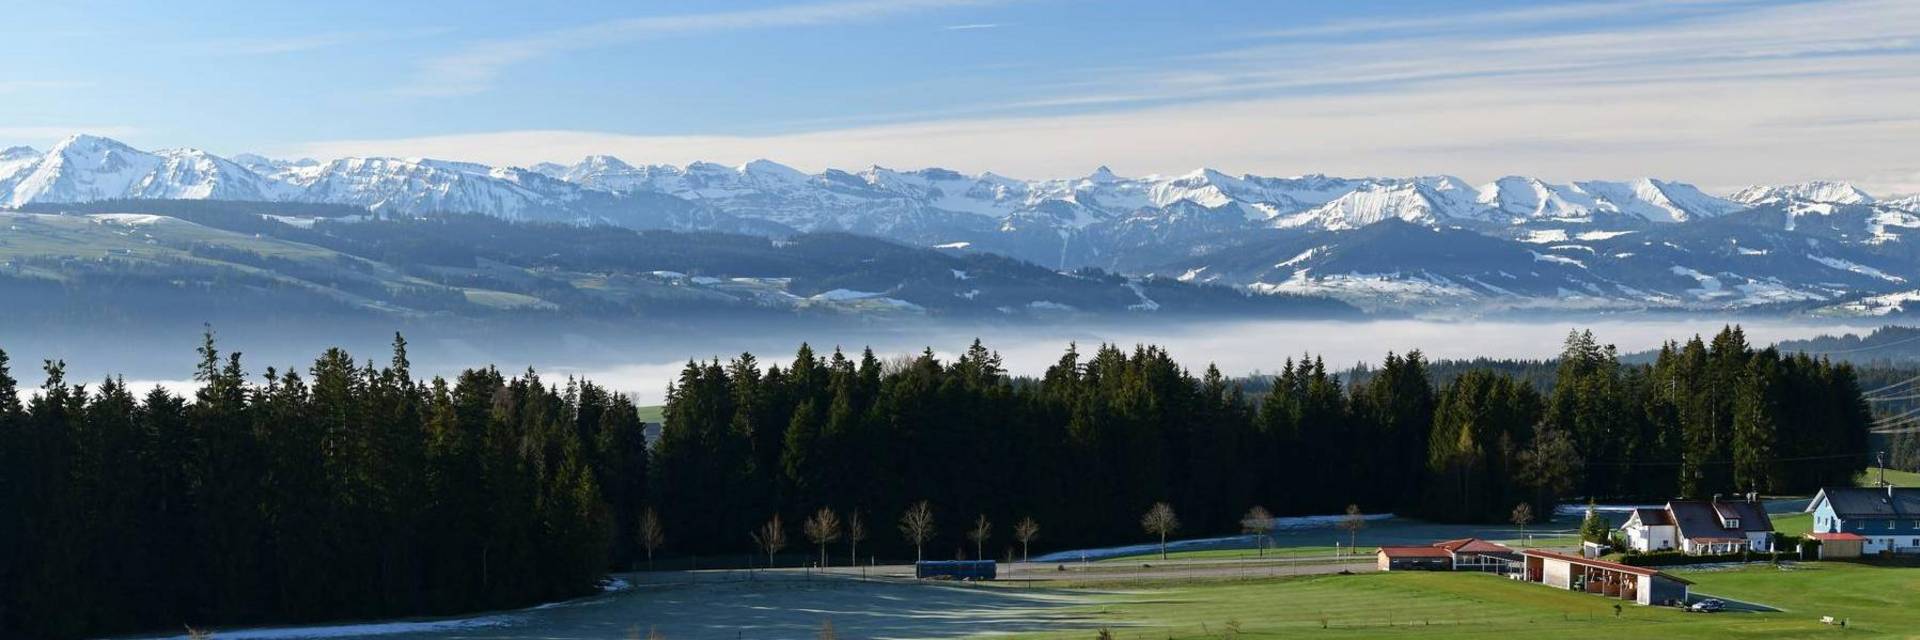 Scheidegg-Golfplatz-Alpen